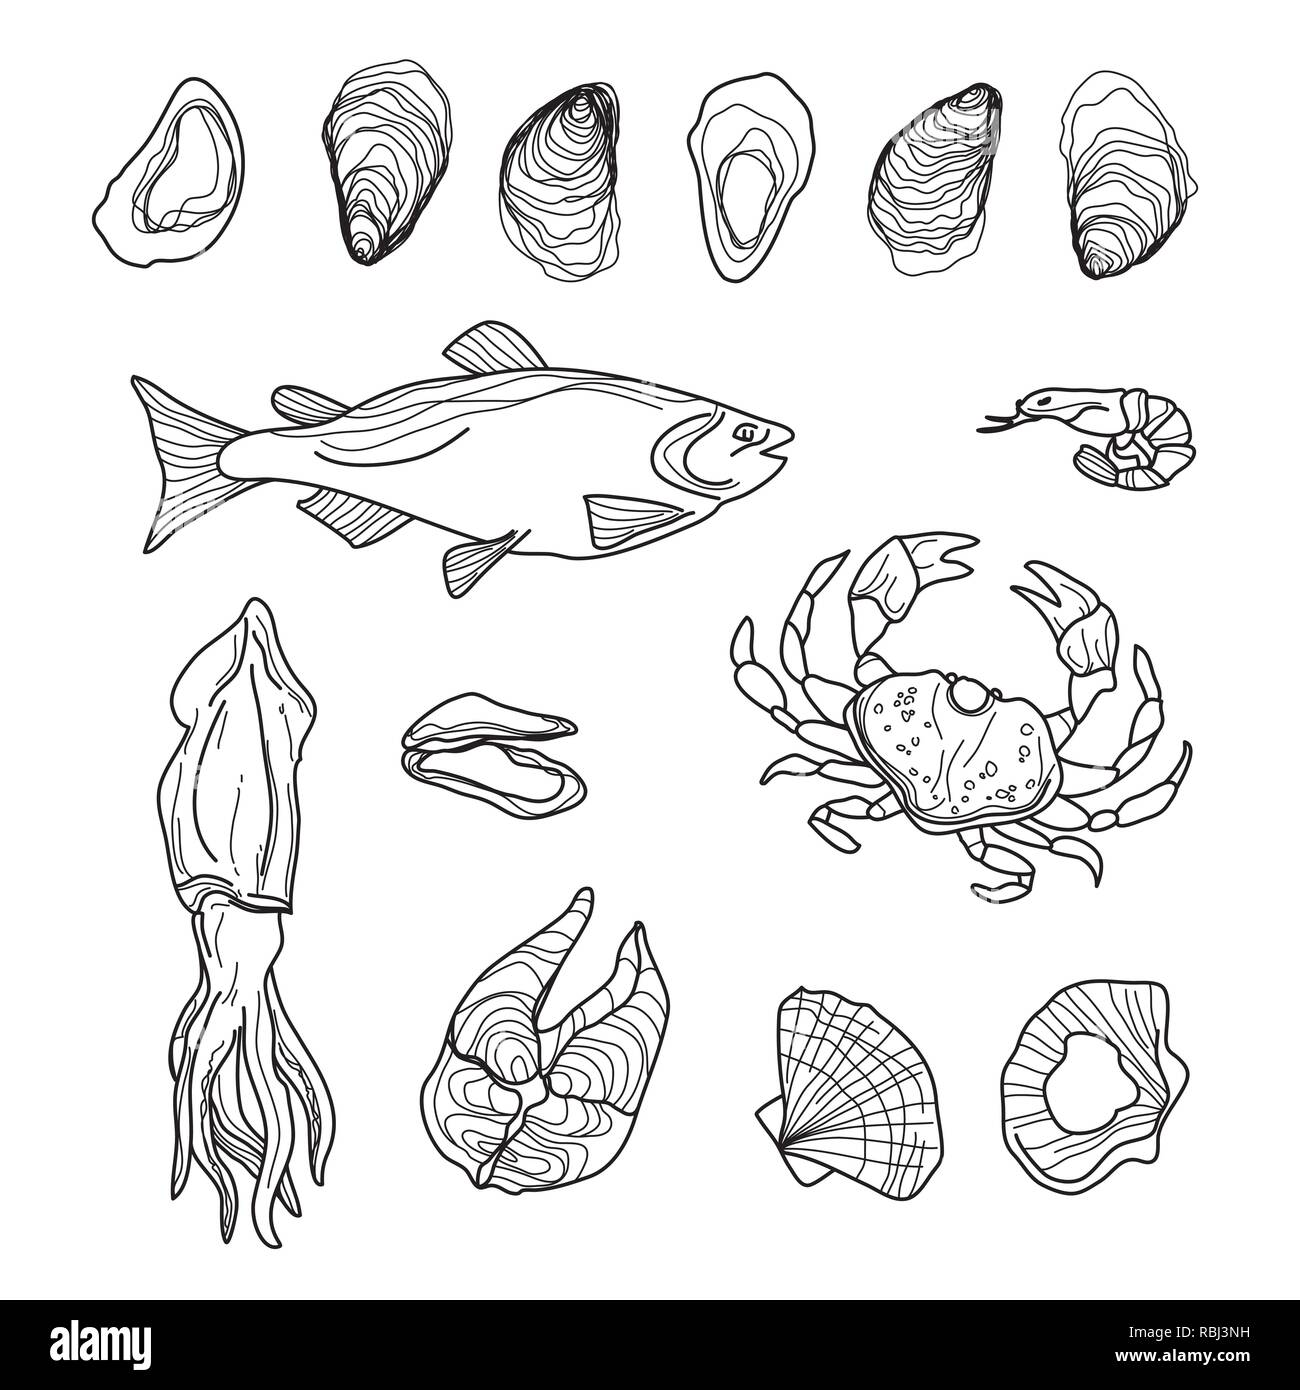 Collection de fruits de mer à la main sur du blanc. Les poissons, les crabes, les calmars, les huîtres, crevettes, moules, saumon Illustration de Vecteur